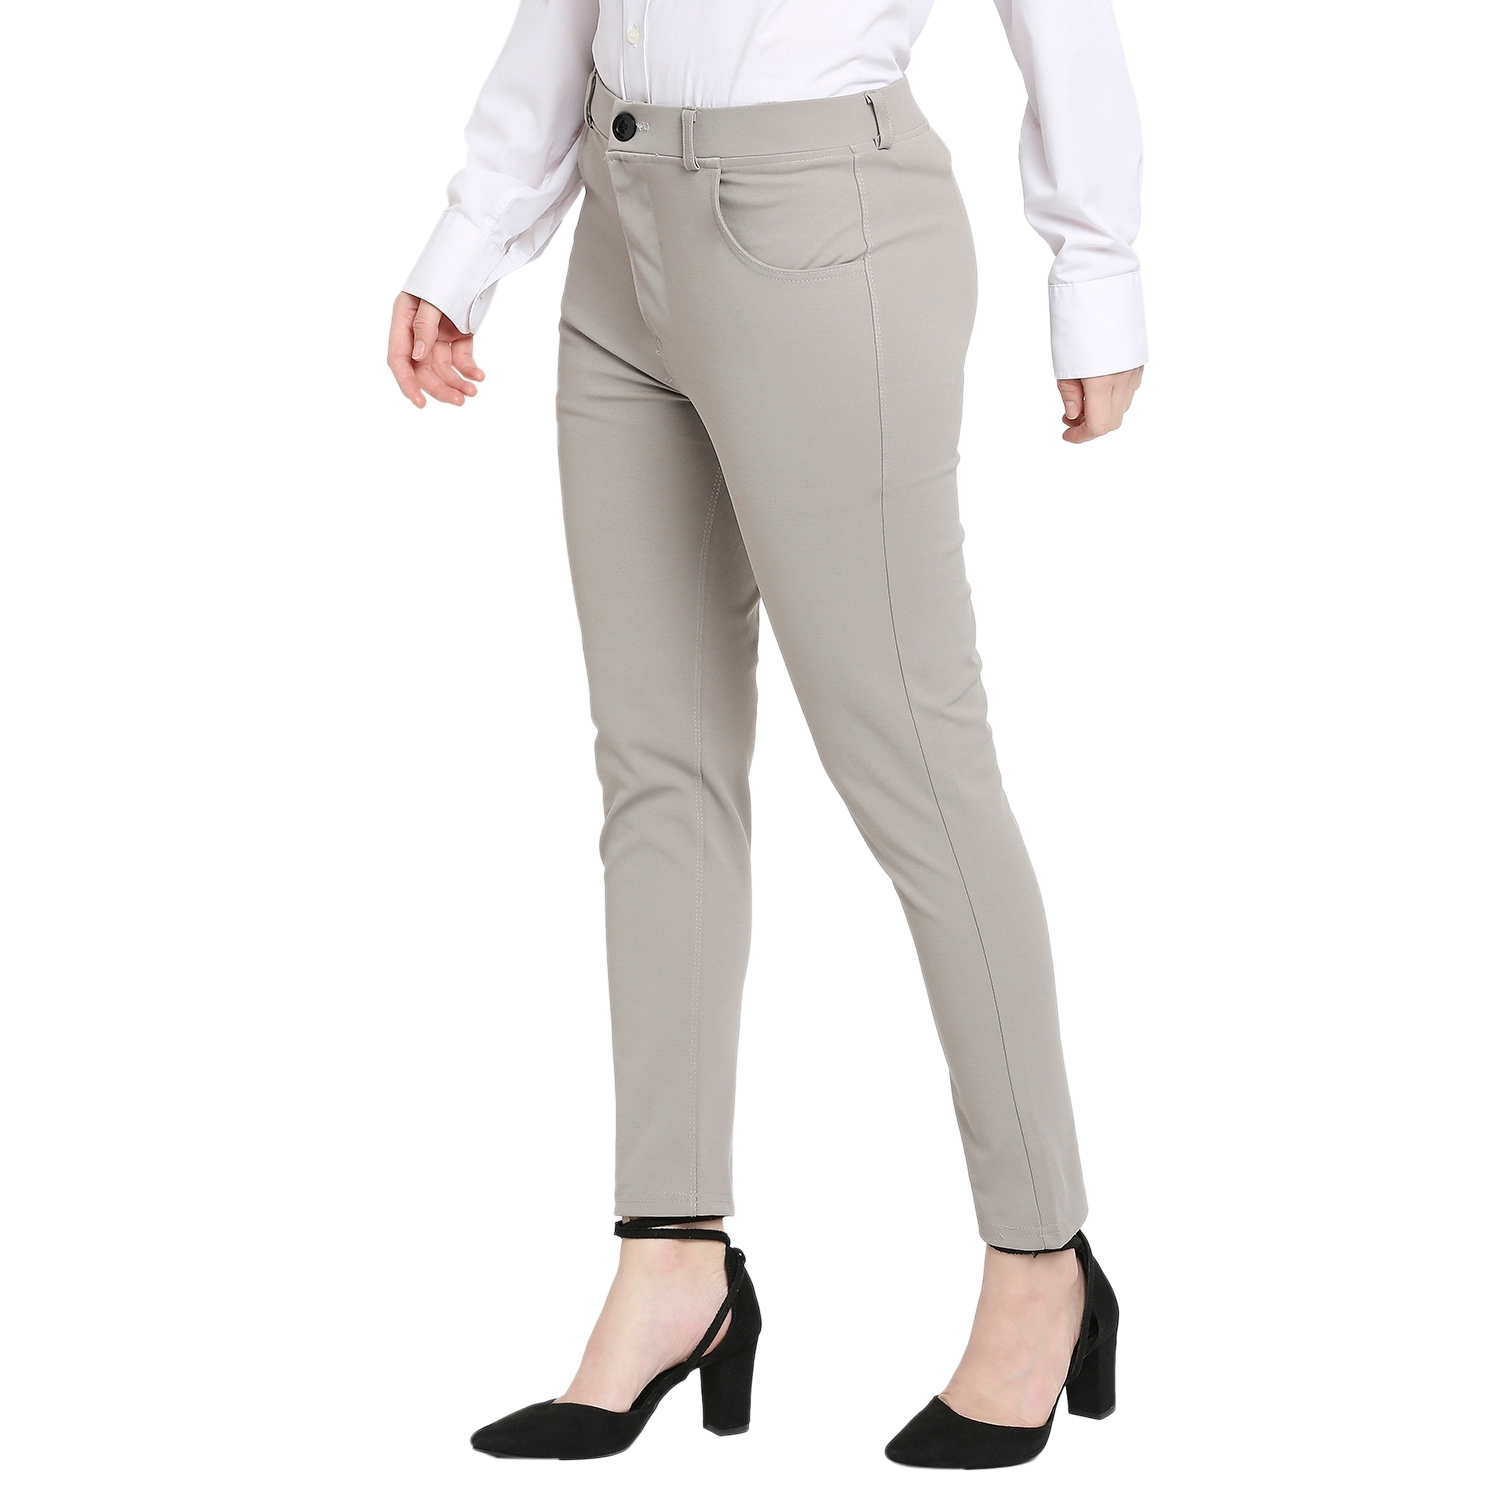 Smarty Pants women's cotton lycra ankle length pastel grey color